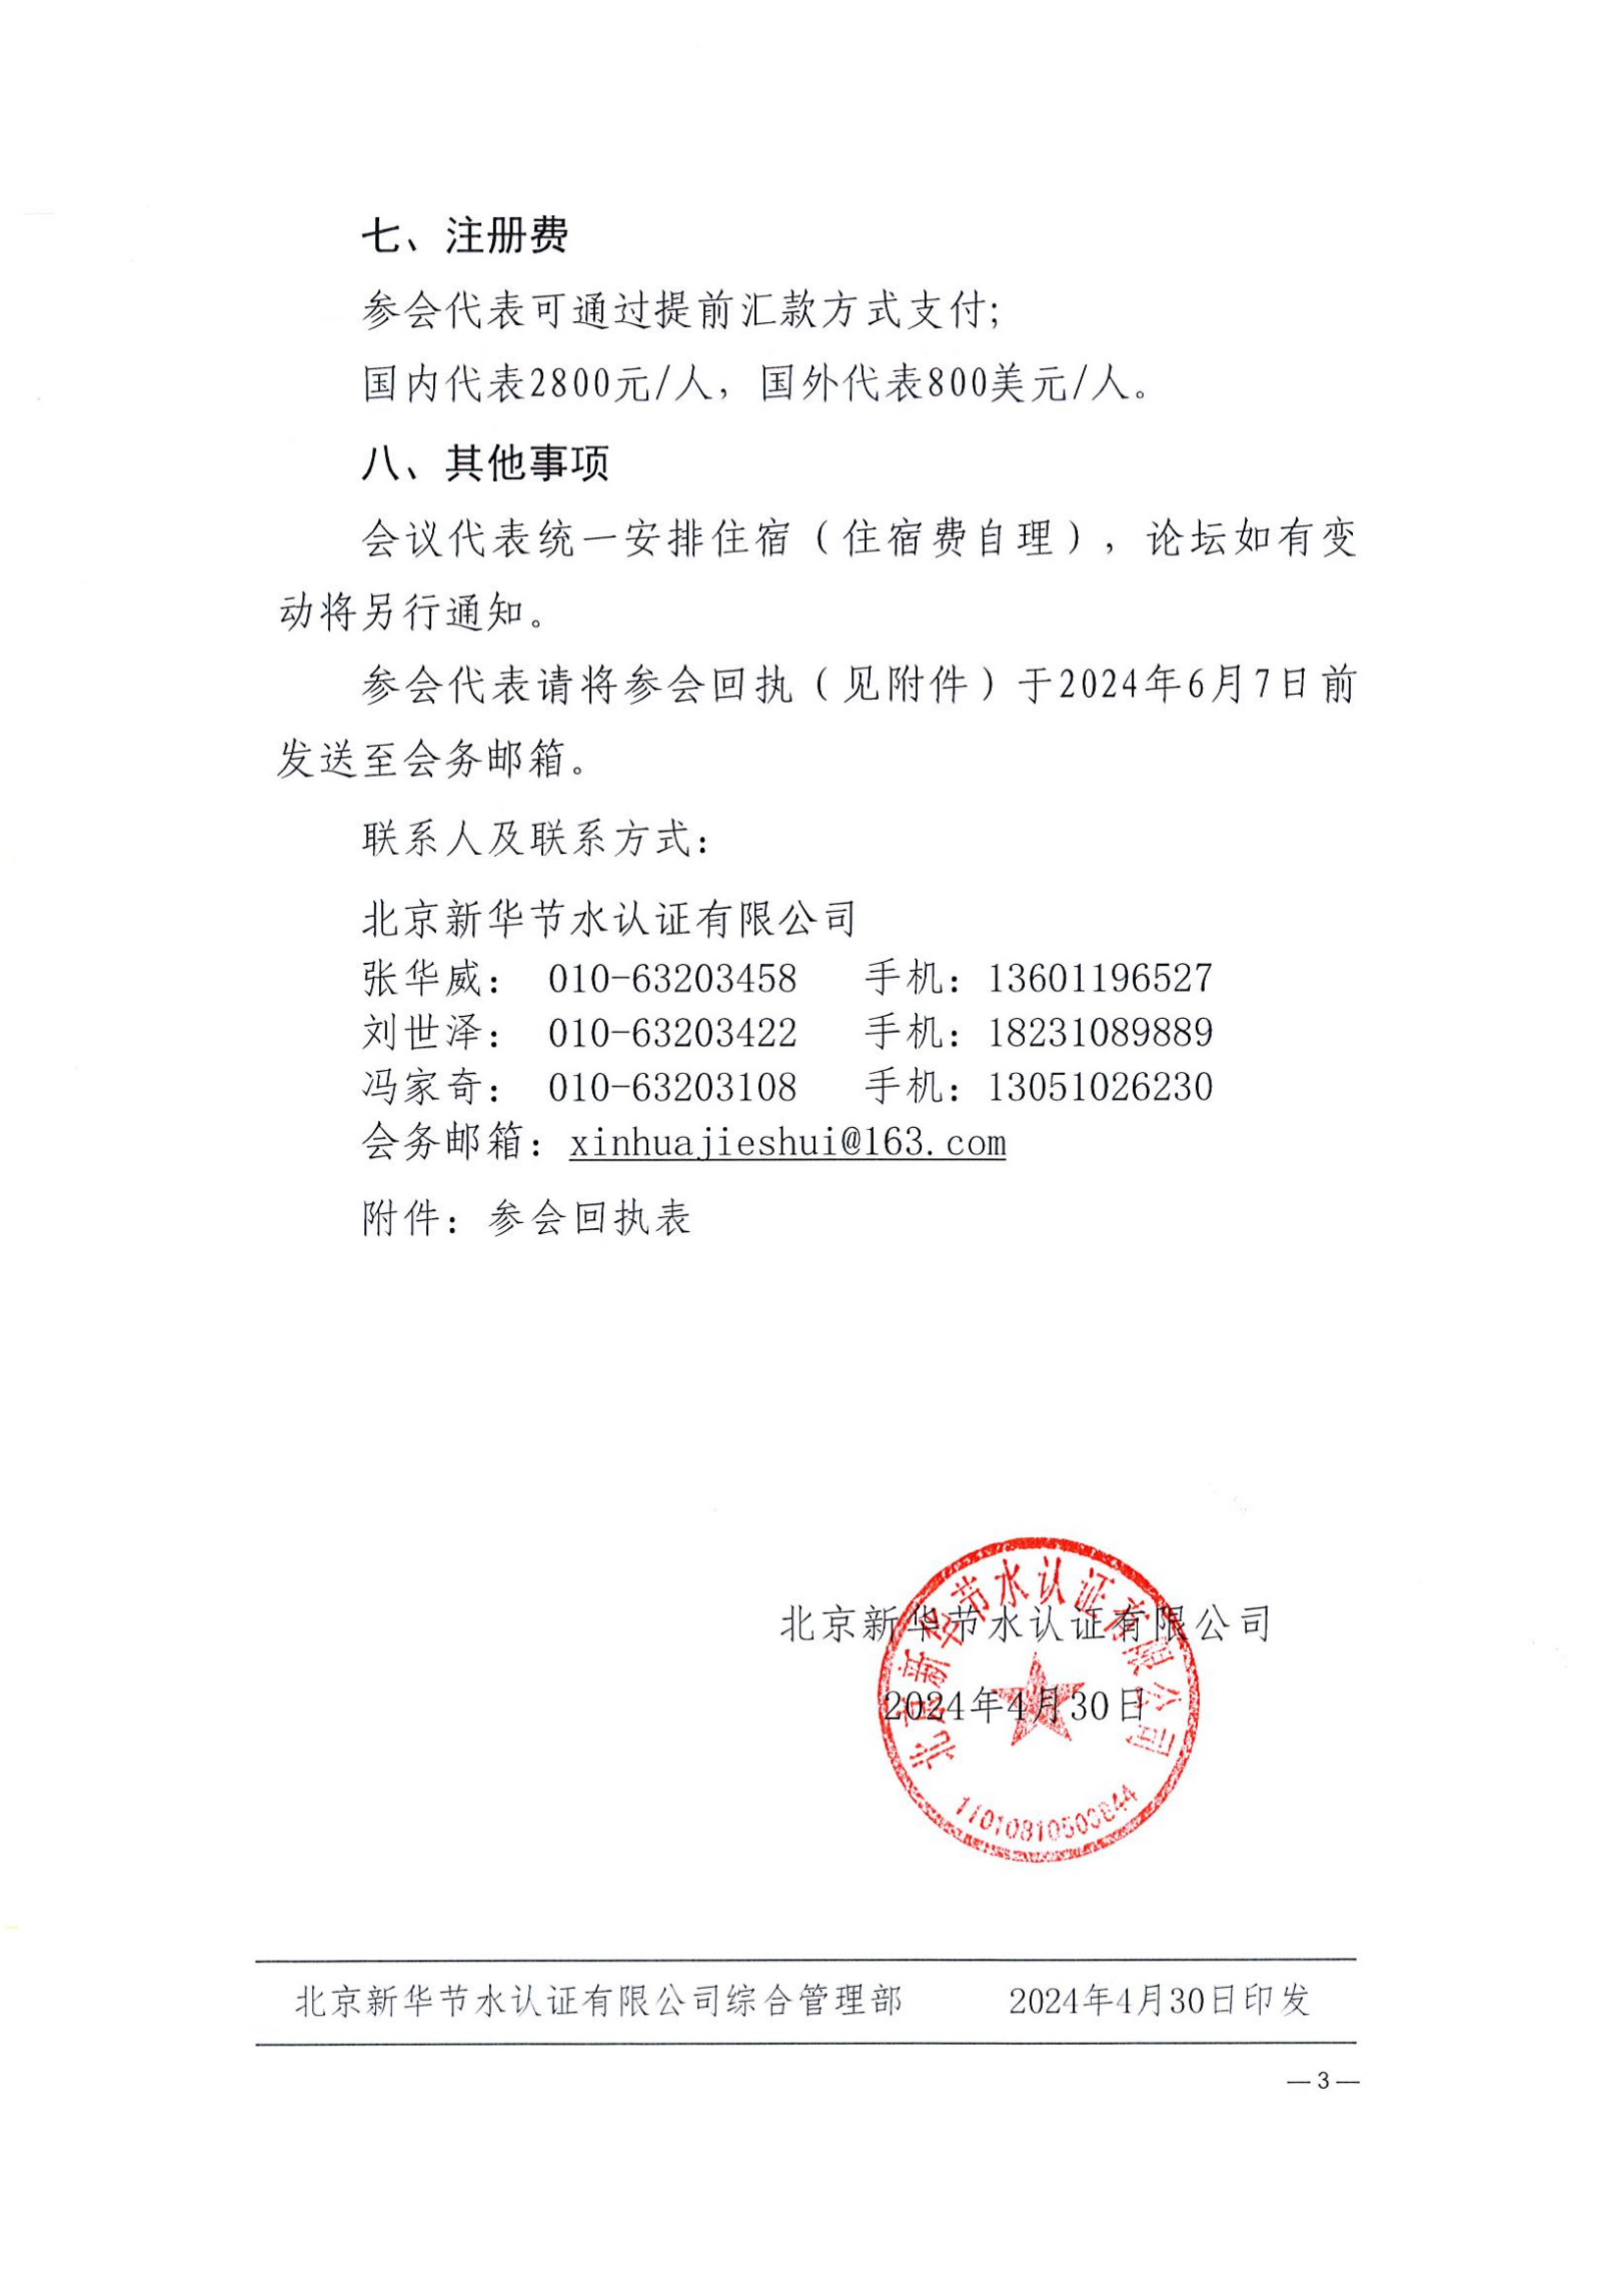 北京新华节水认证有限公司关于召开节水产业发展论坛的通知_02.png